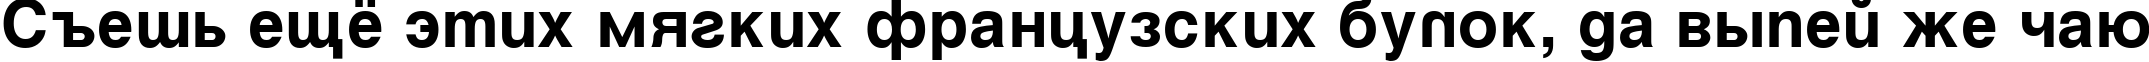 Пример написания шрифтом VantaBold текста на русском